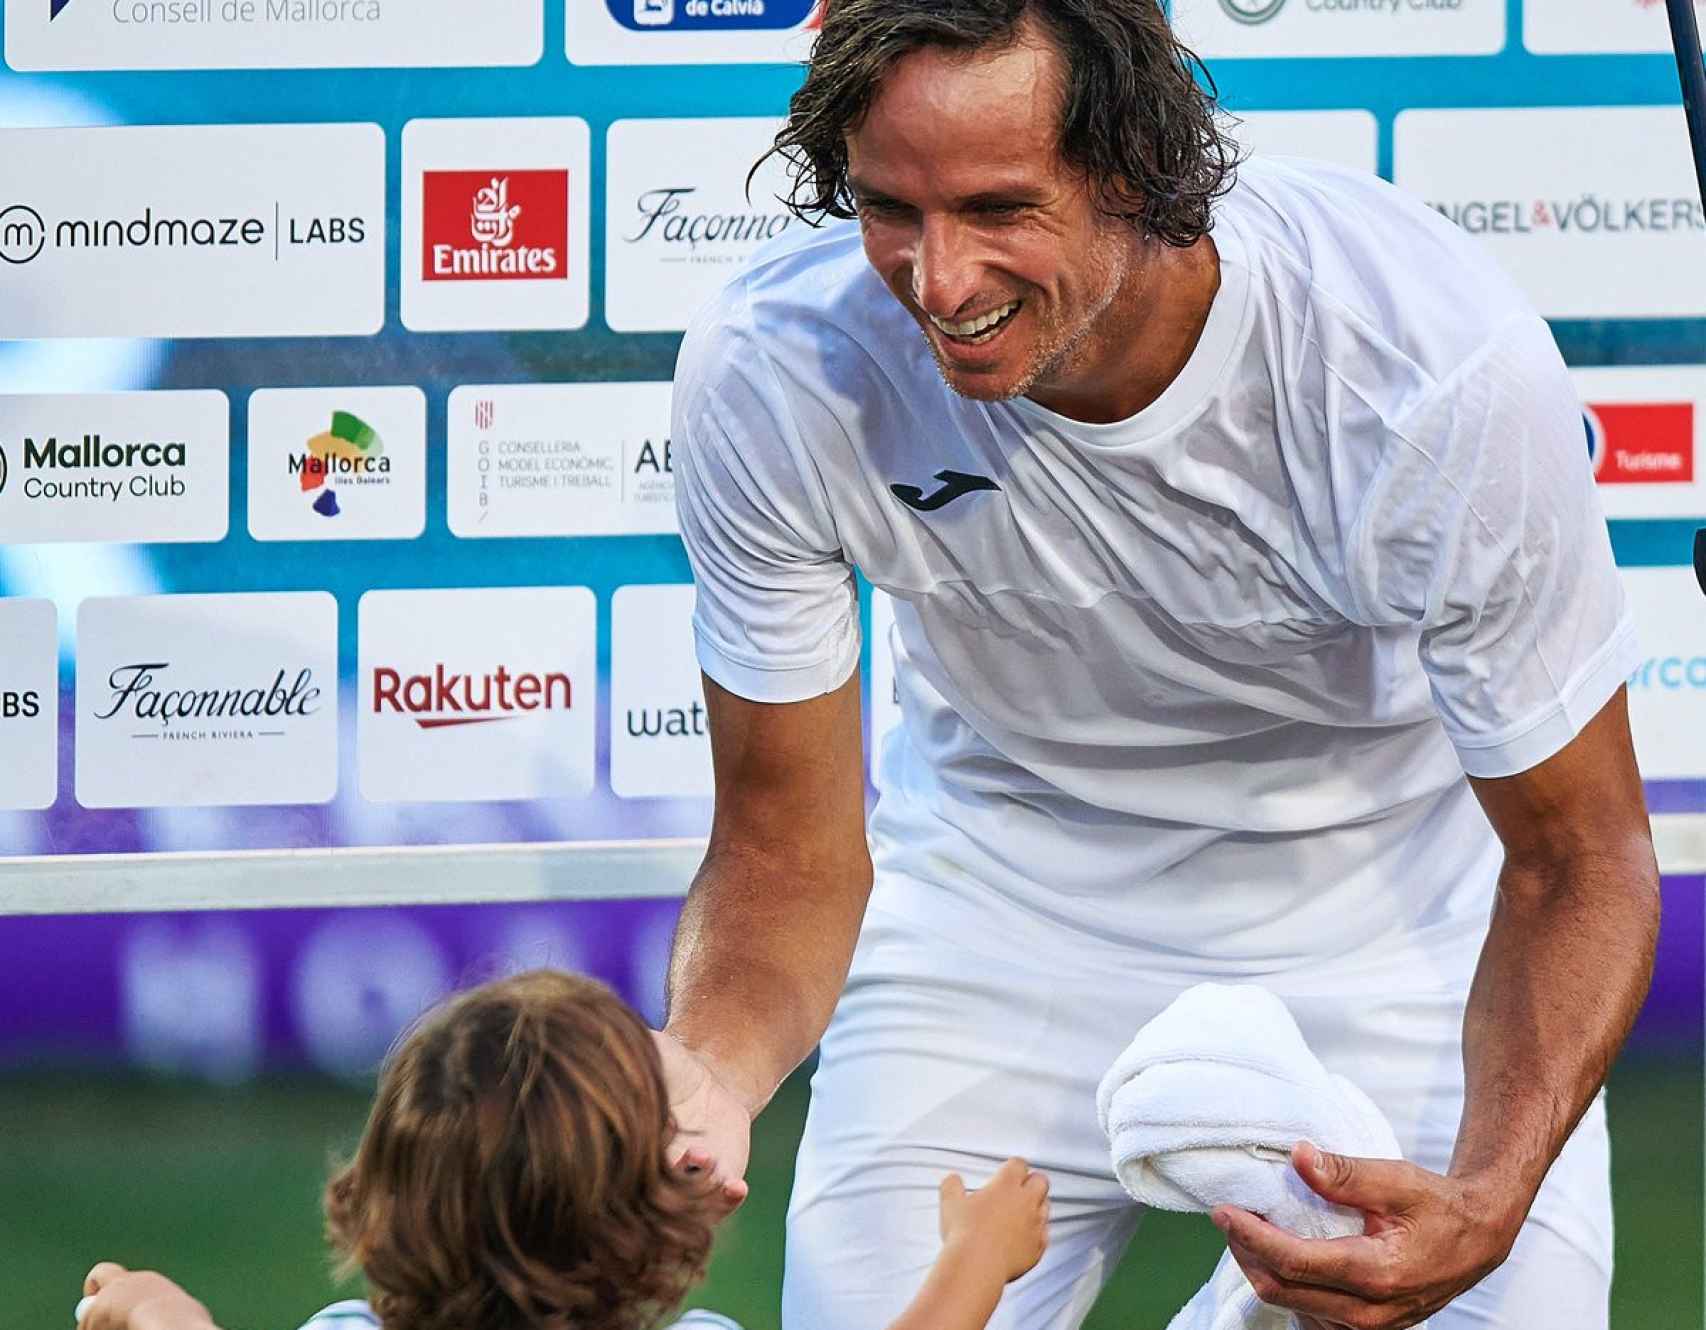 Una imagen de Feliciano López en su despedida. Foto: Twitter Mallorca Championships